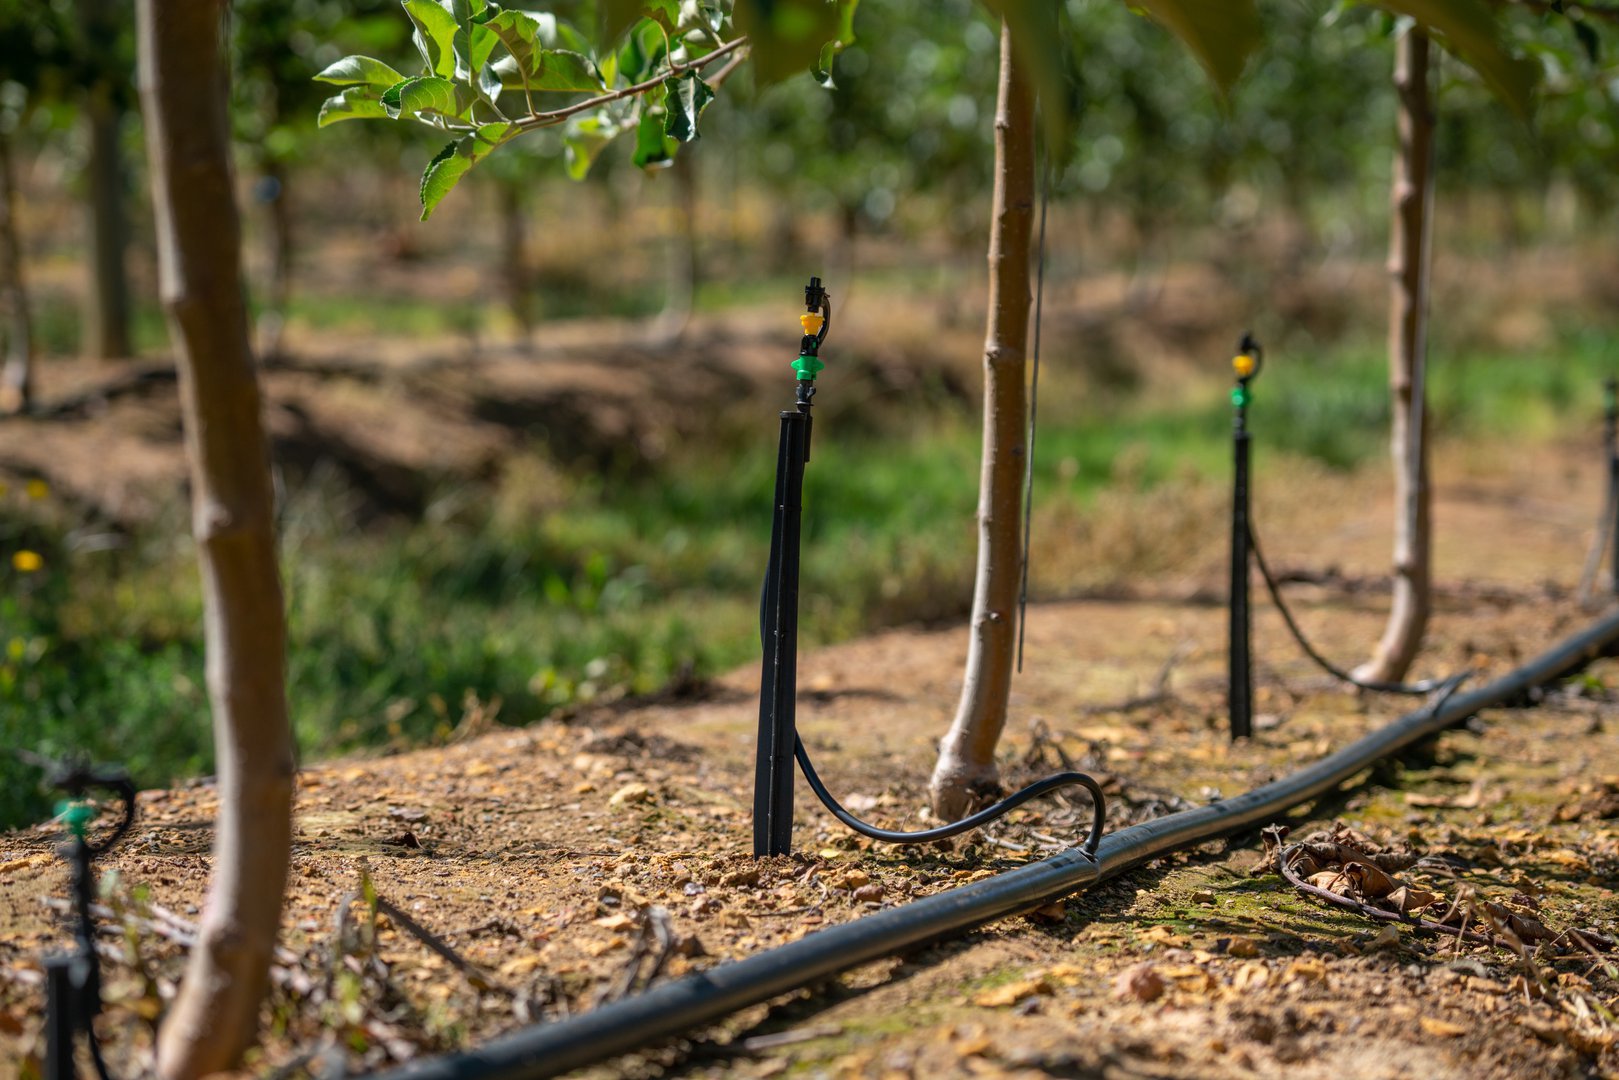 Spinkler irrigation systems